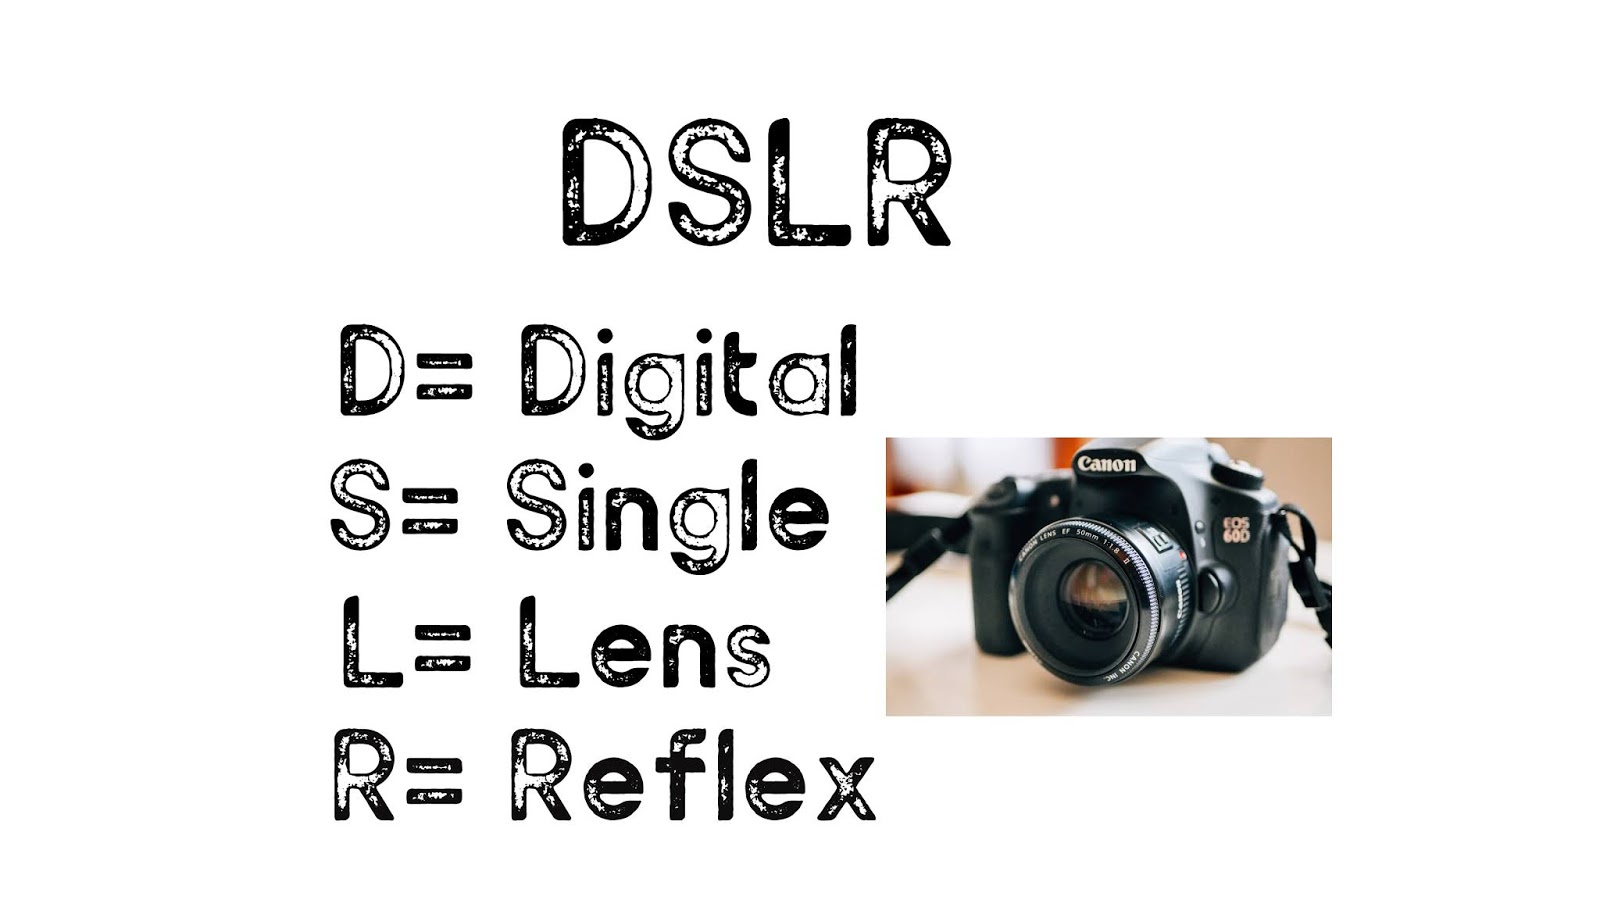 Hva er den fulle formen for DSLR?